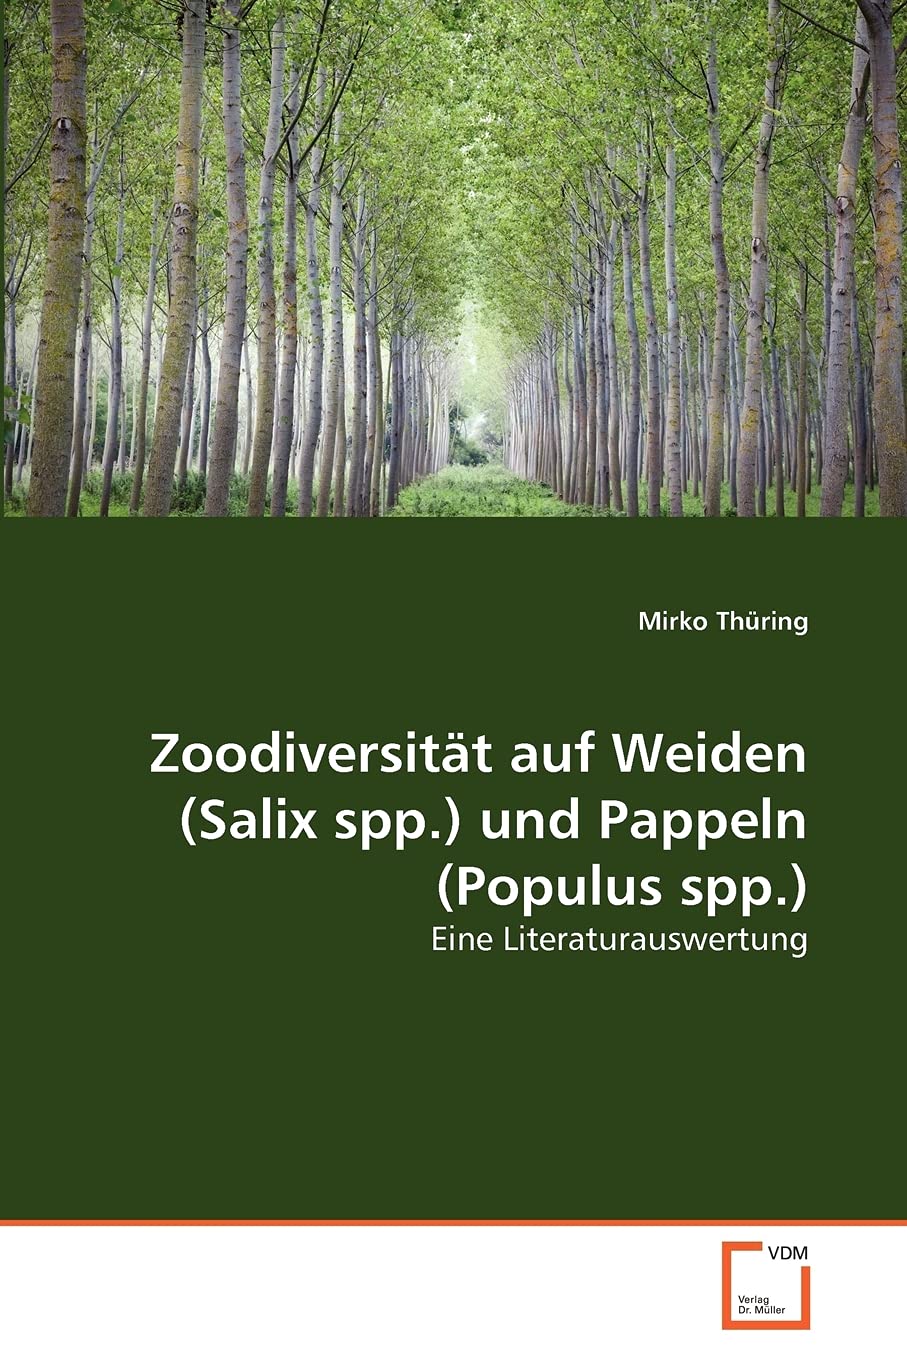 Zoodiversität auf Weiden (Salix spp.) und Pappeln (Populus spp.): Eine Literaturauswertung